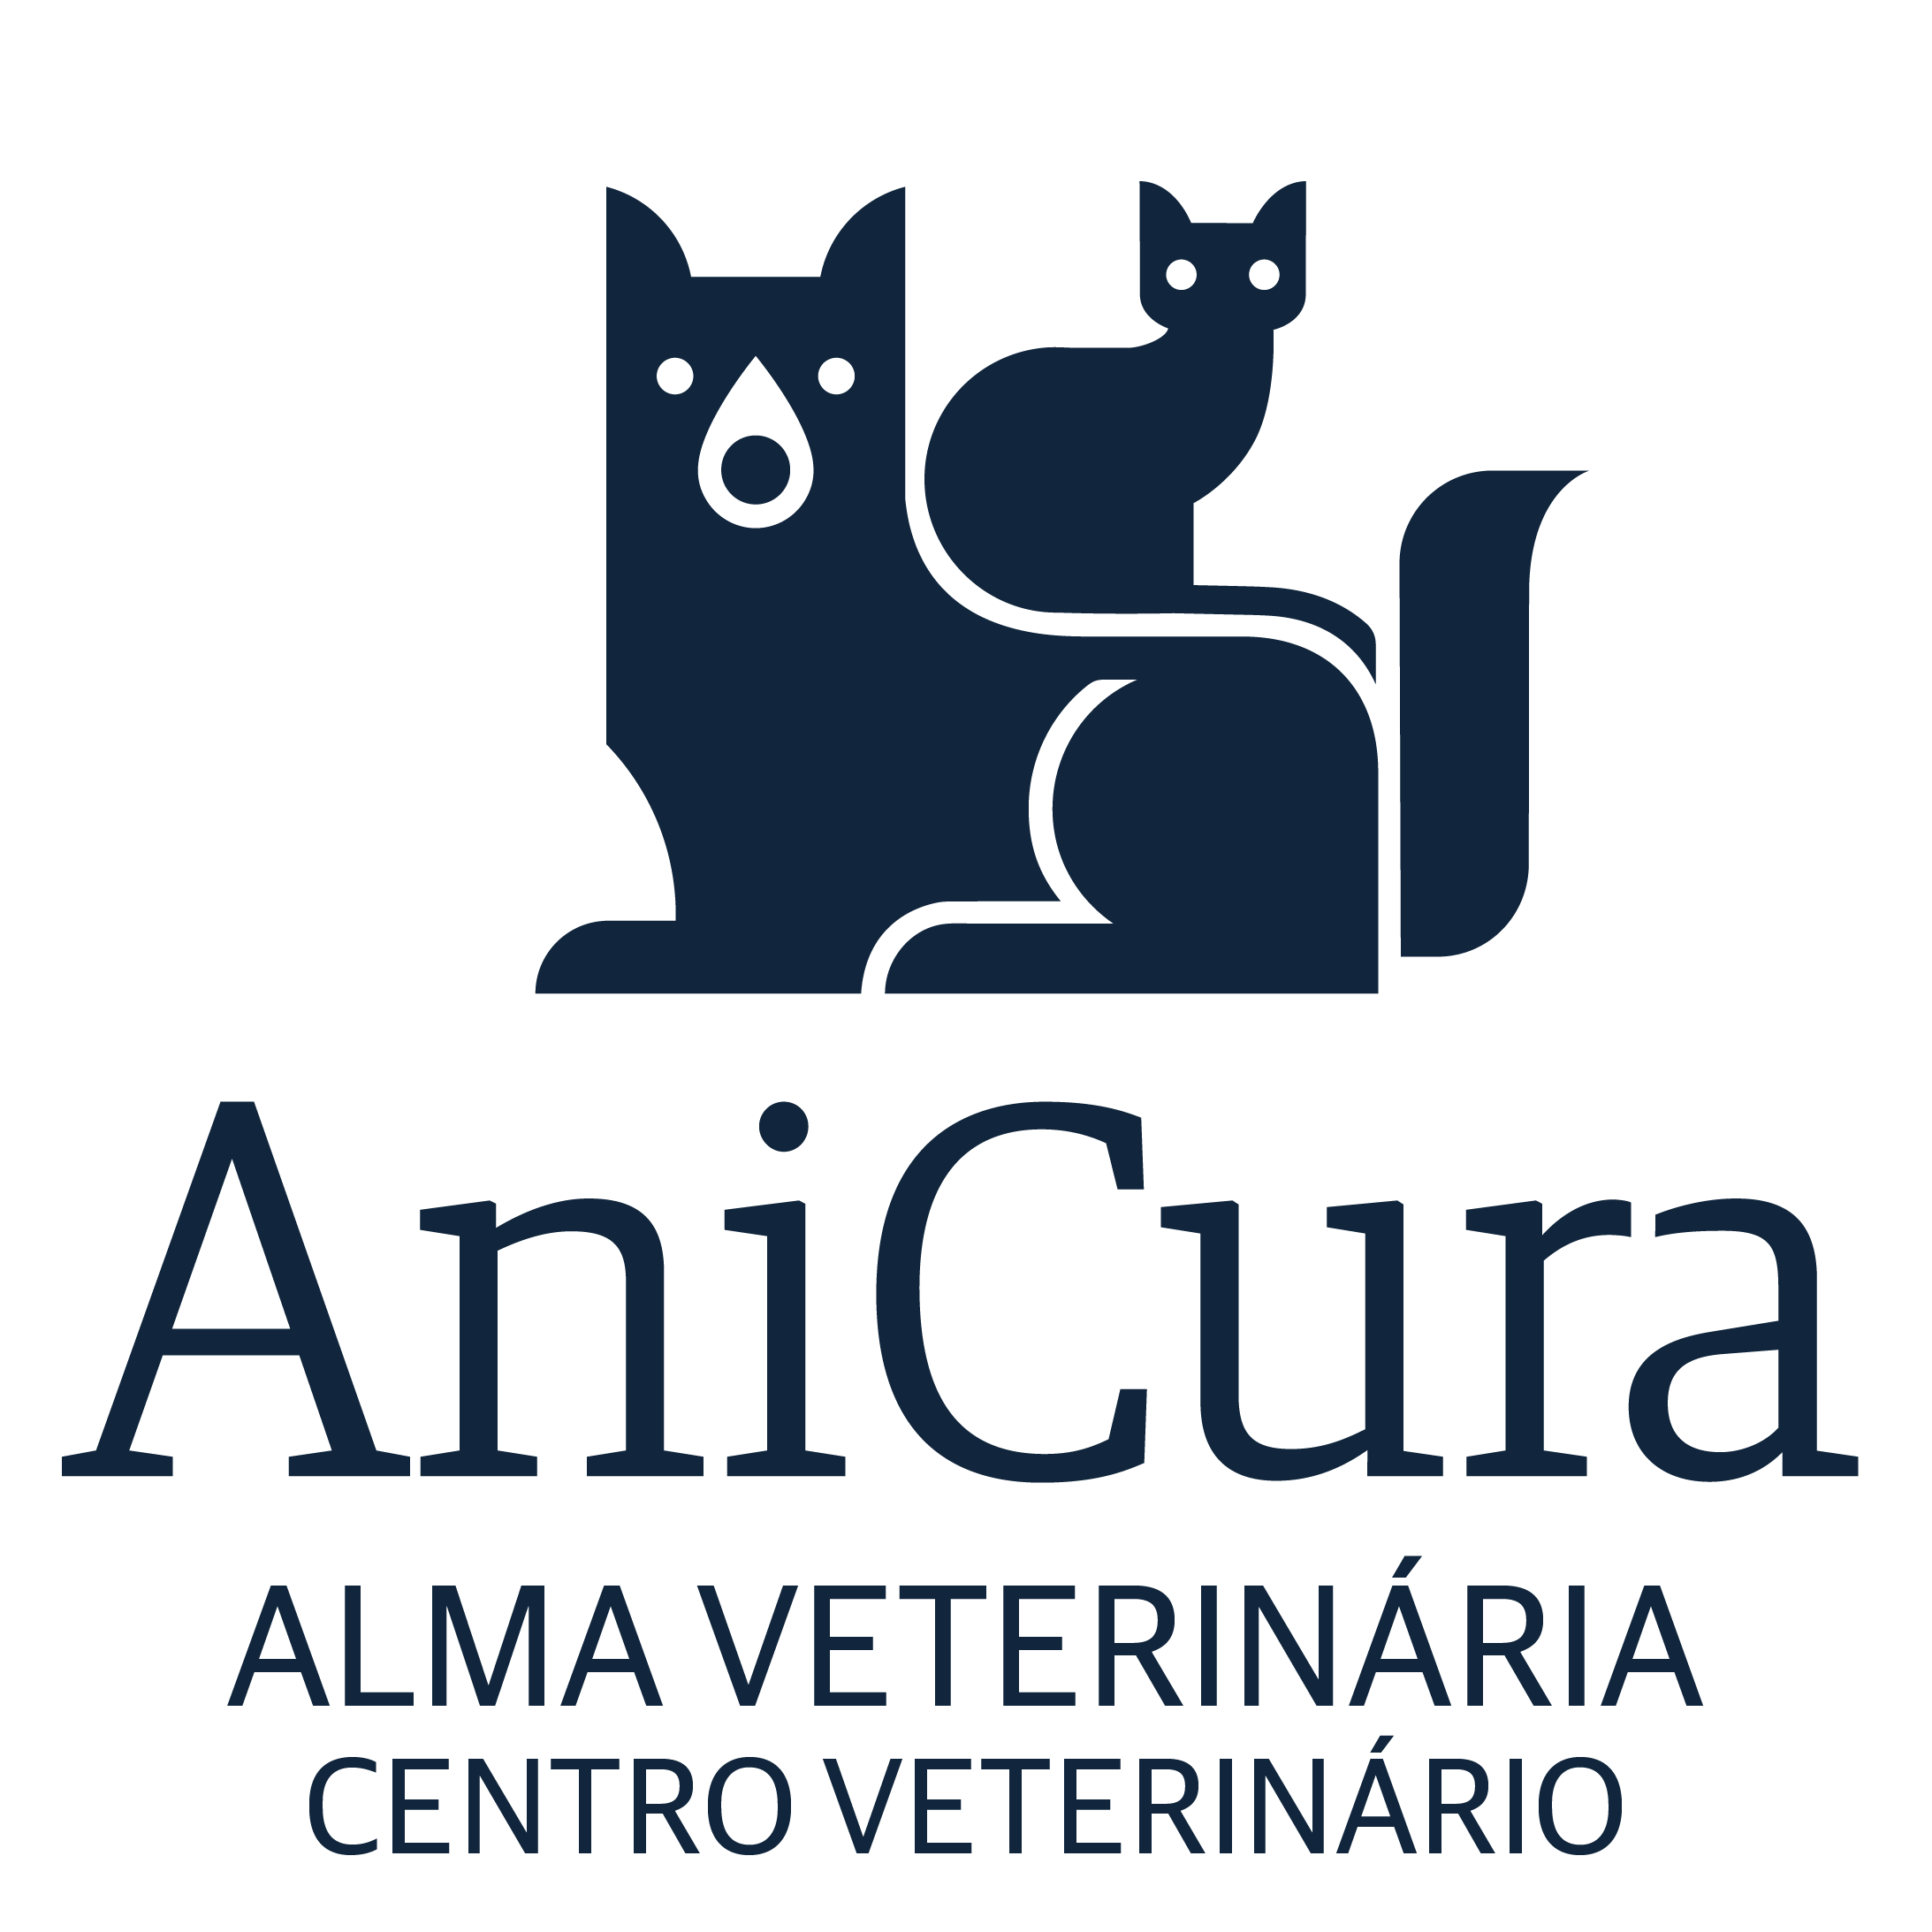 AniCura Alma Veterinária Centro Veterinário - São Marcos logo